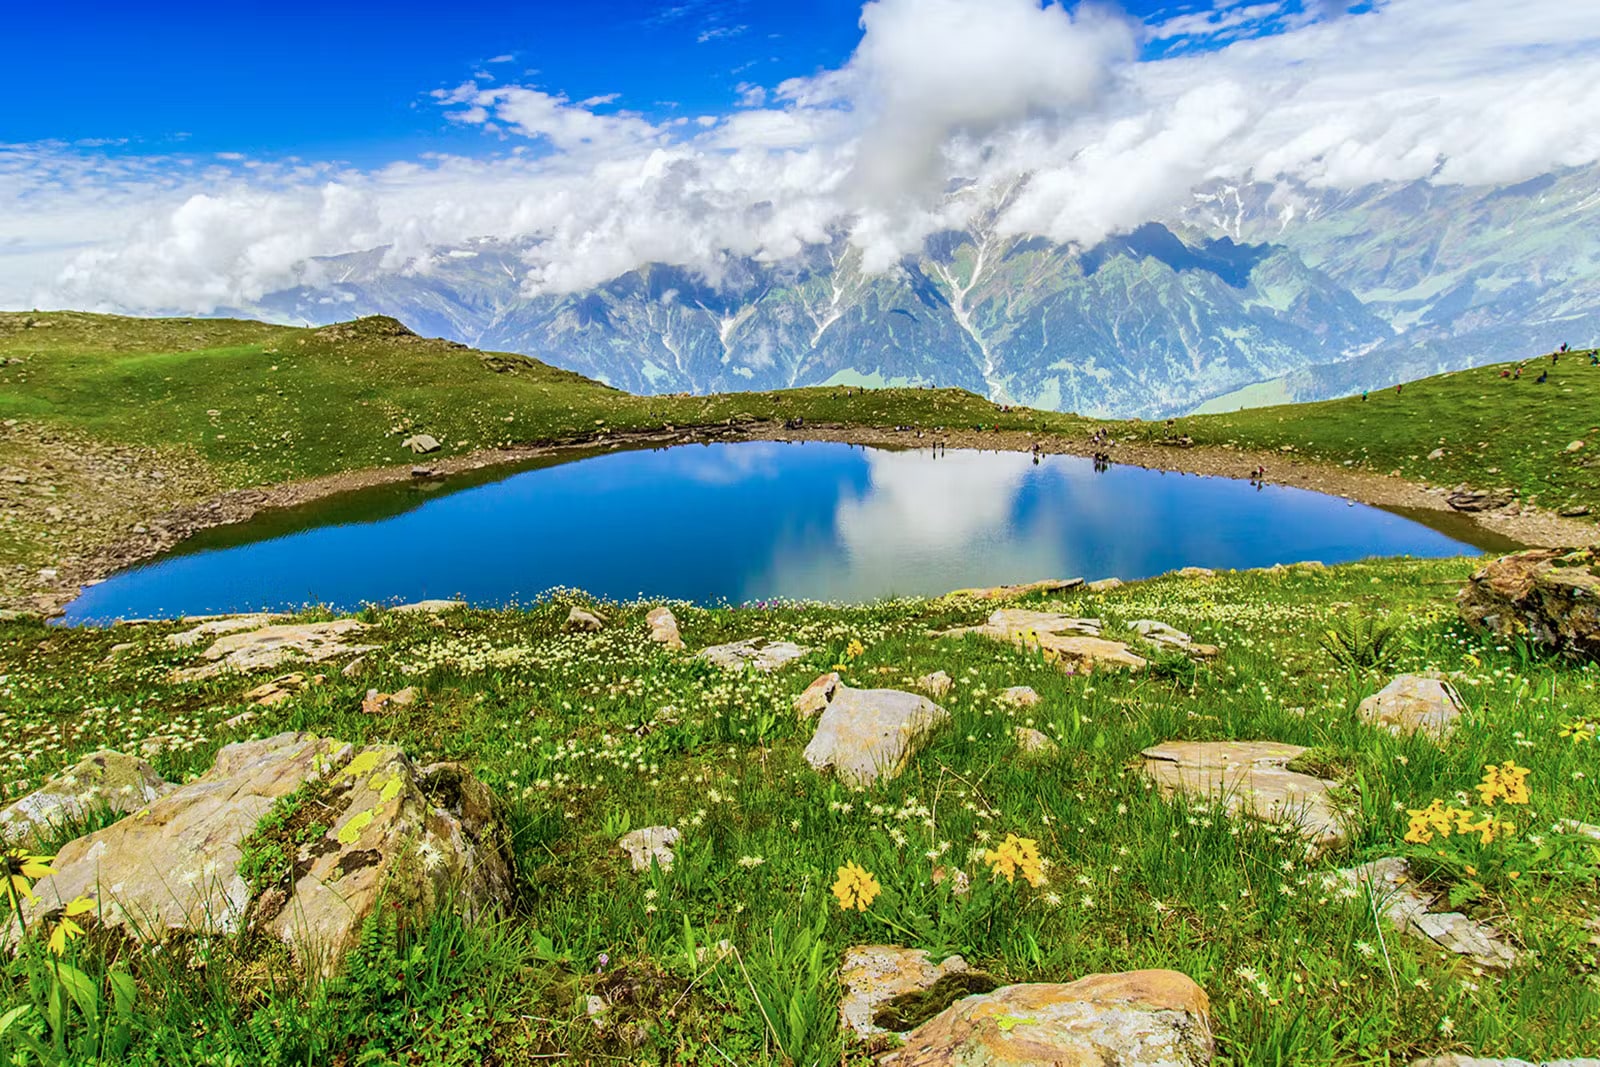 Bhrigu Lake : A Precious Gem in the Himalayas